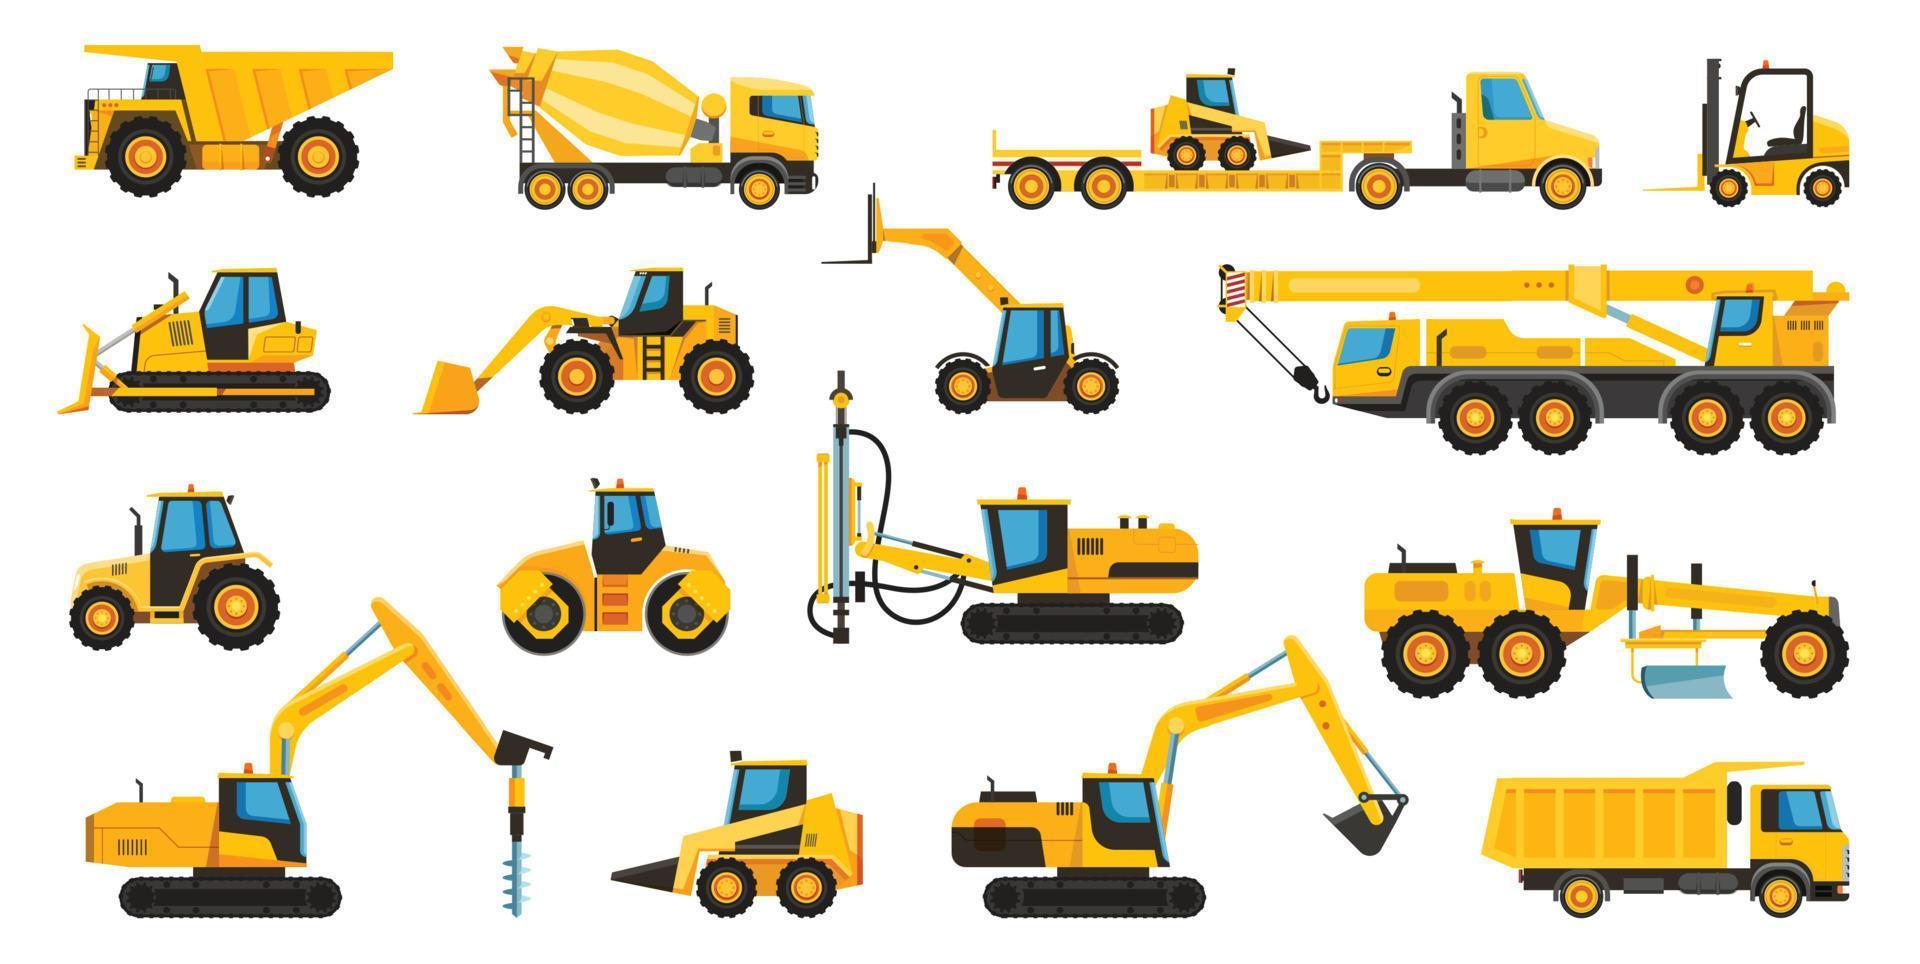 construcción máquinas, equipo y pesado edificio maquinaria. grua, excavador, excavadora, tractor, camión, máquina elevadora, cavador plano vector conjunto